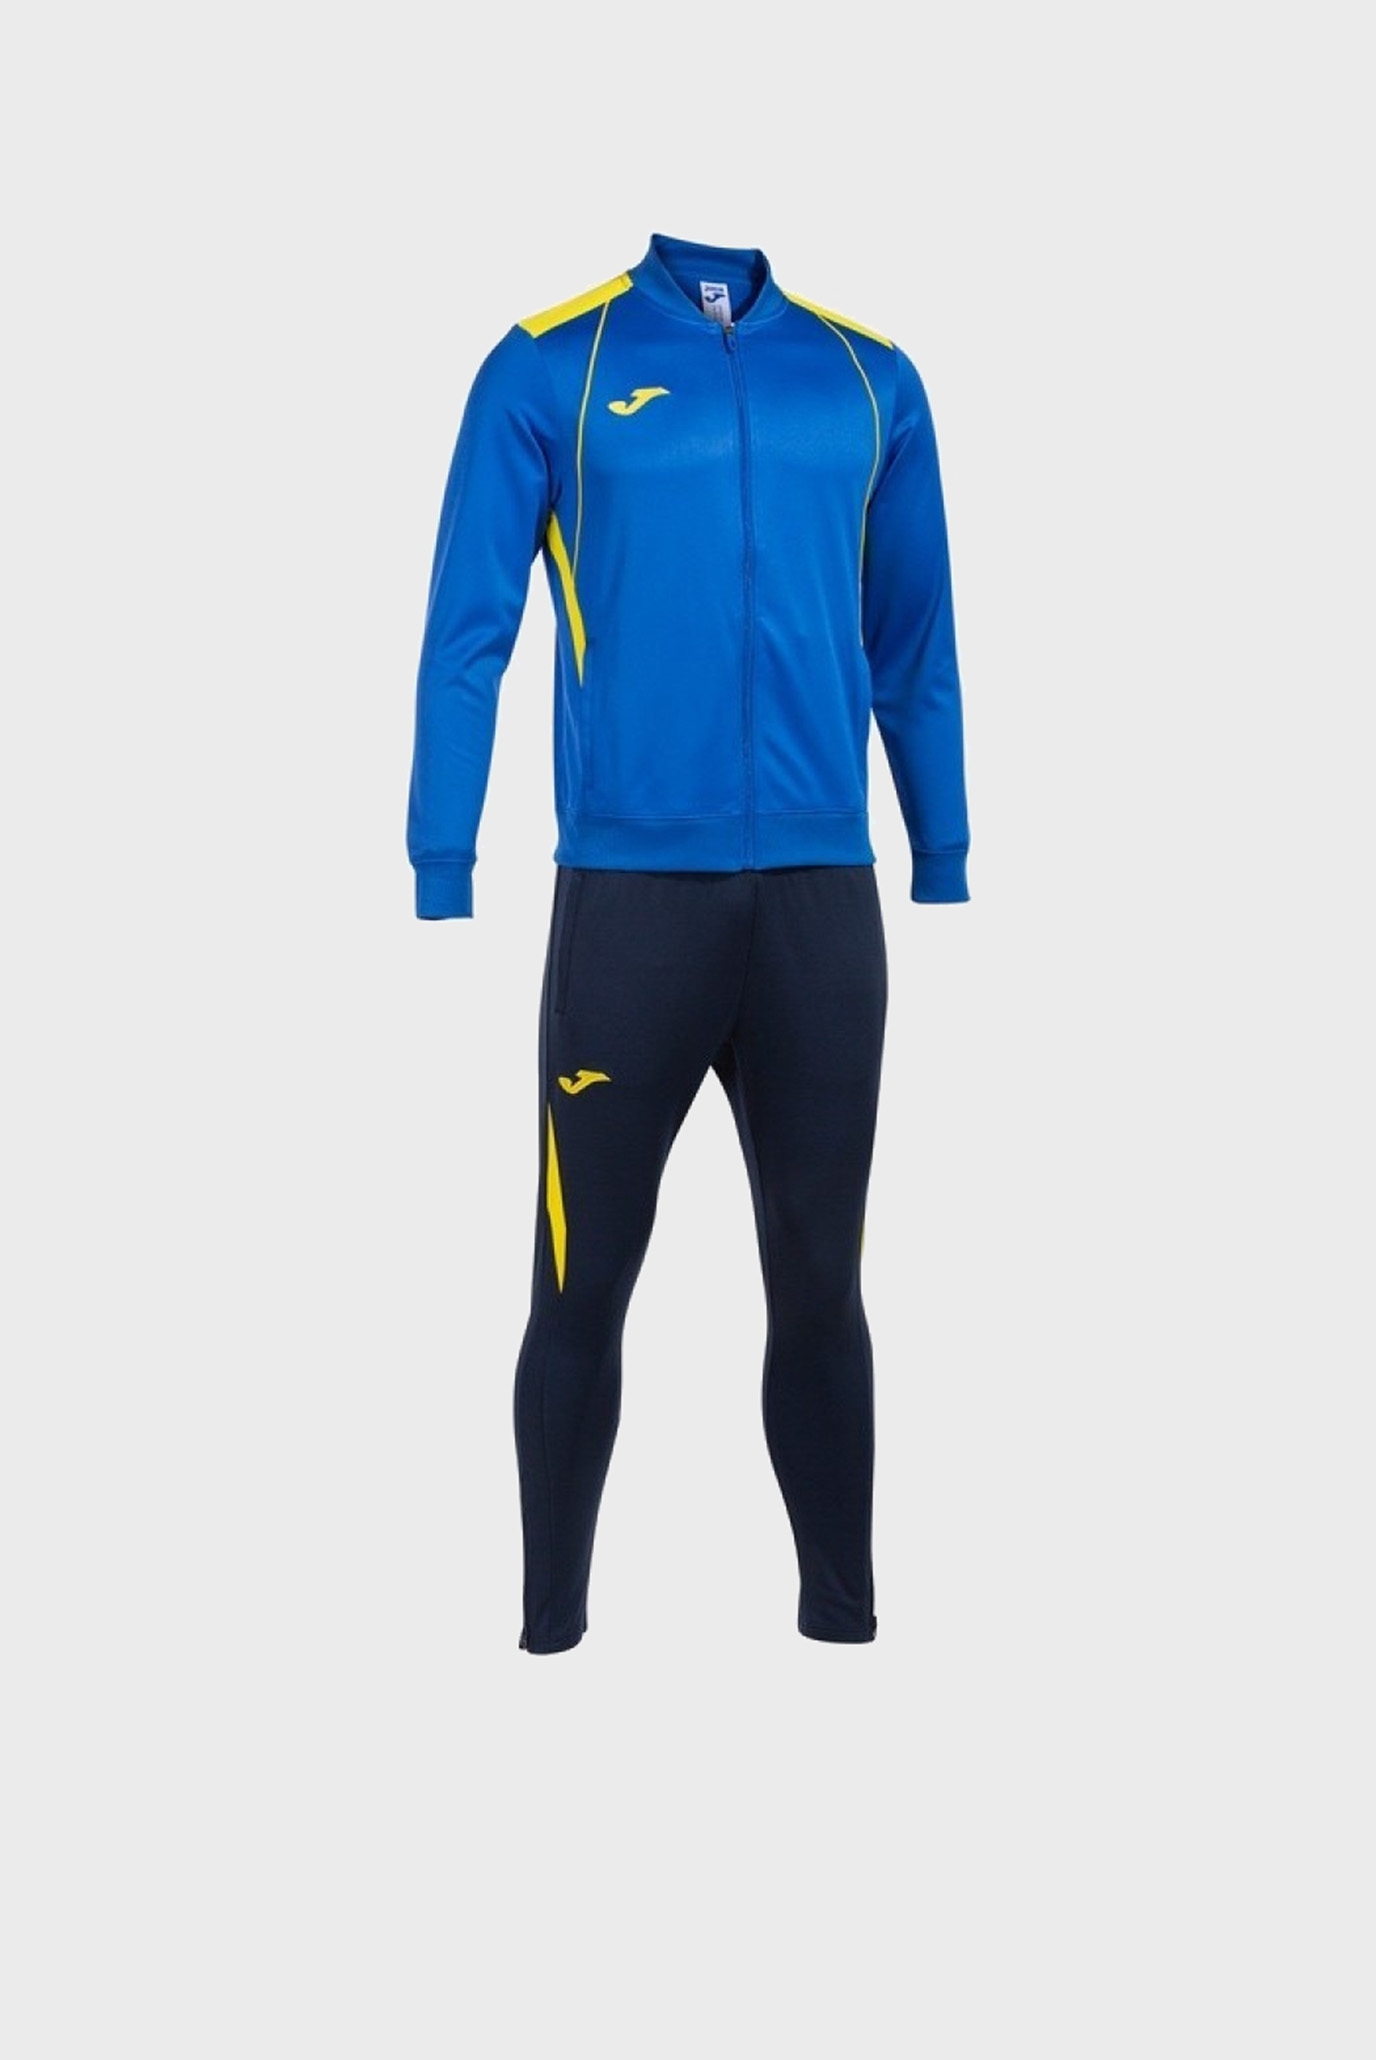 Детский синий спортивный костюм (кофта, брюки) 1